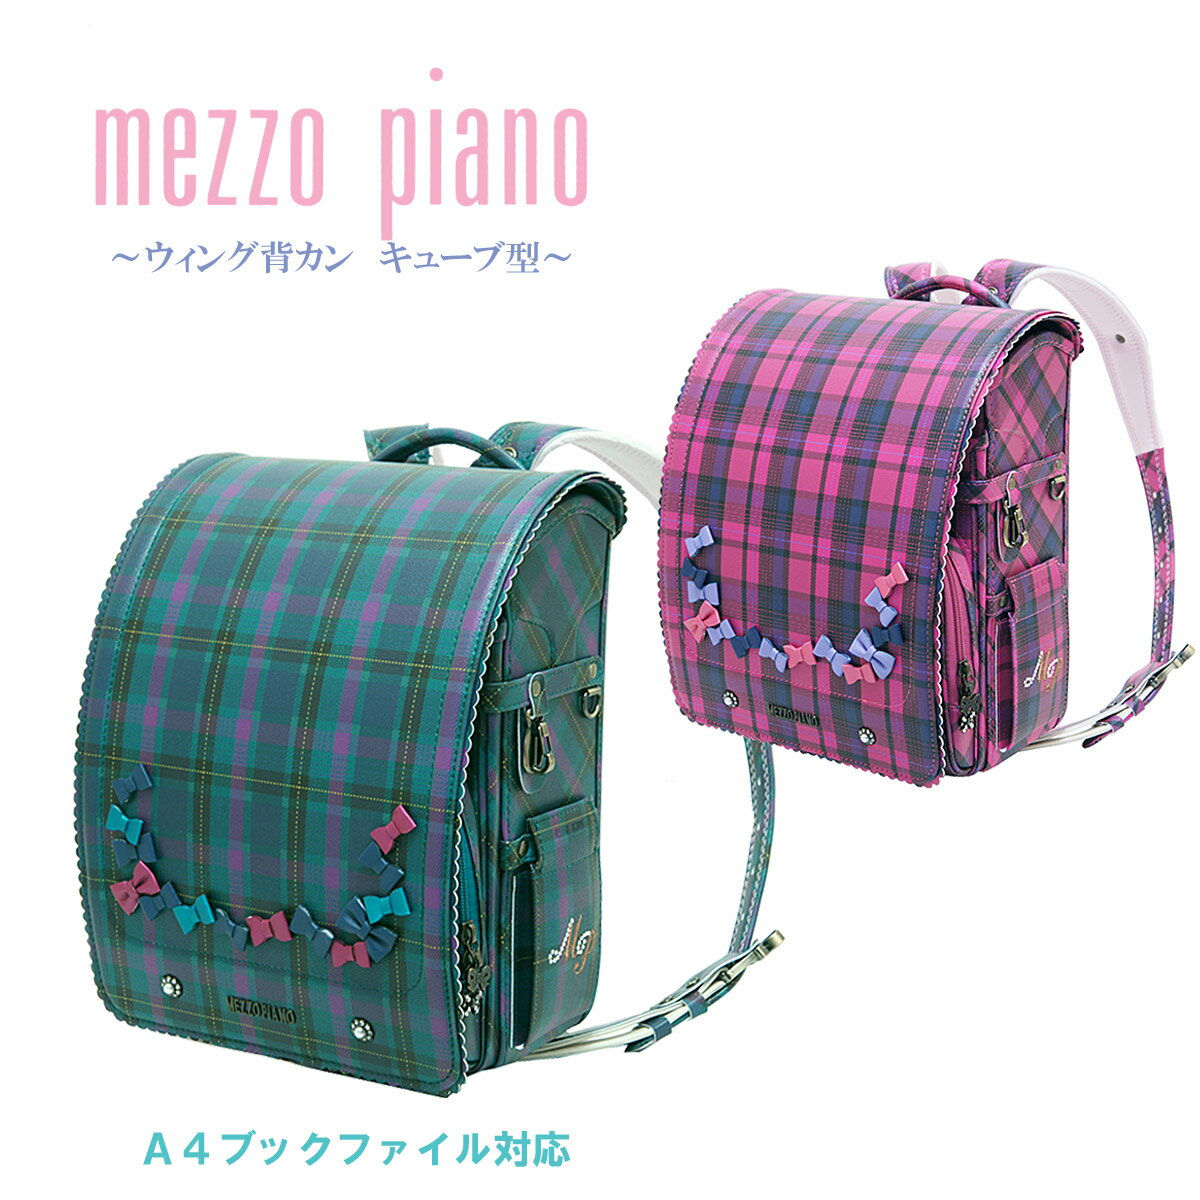 バッグ・ランドセル, ランドセル 2022 mezzo piano 0103-9212 MADE IN JAPAN()